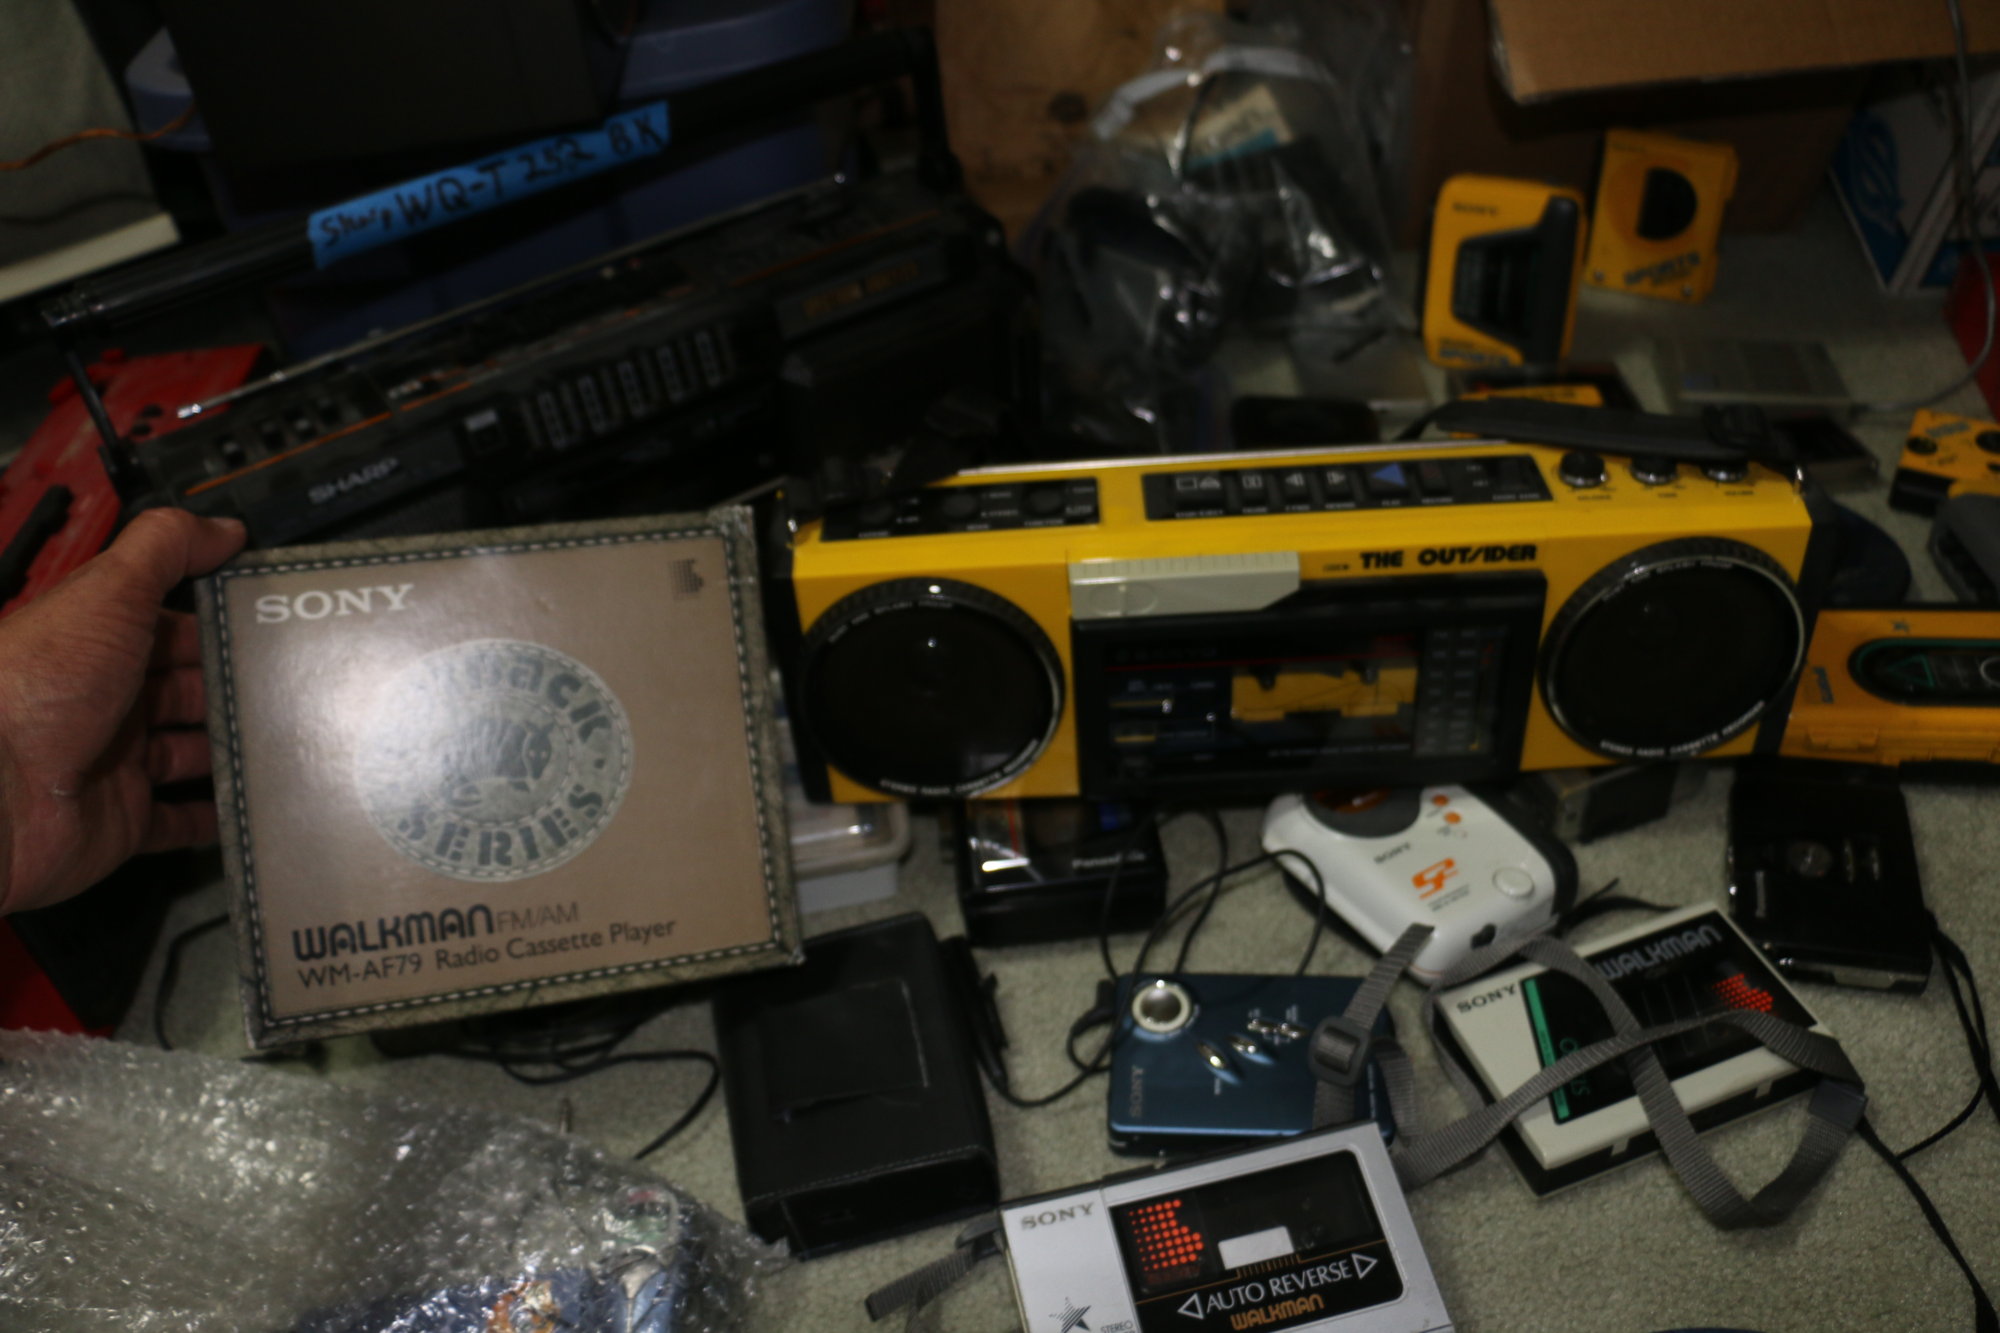 IMG_0323 Water proof Cassette walkman tape boombox sony.JPG